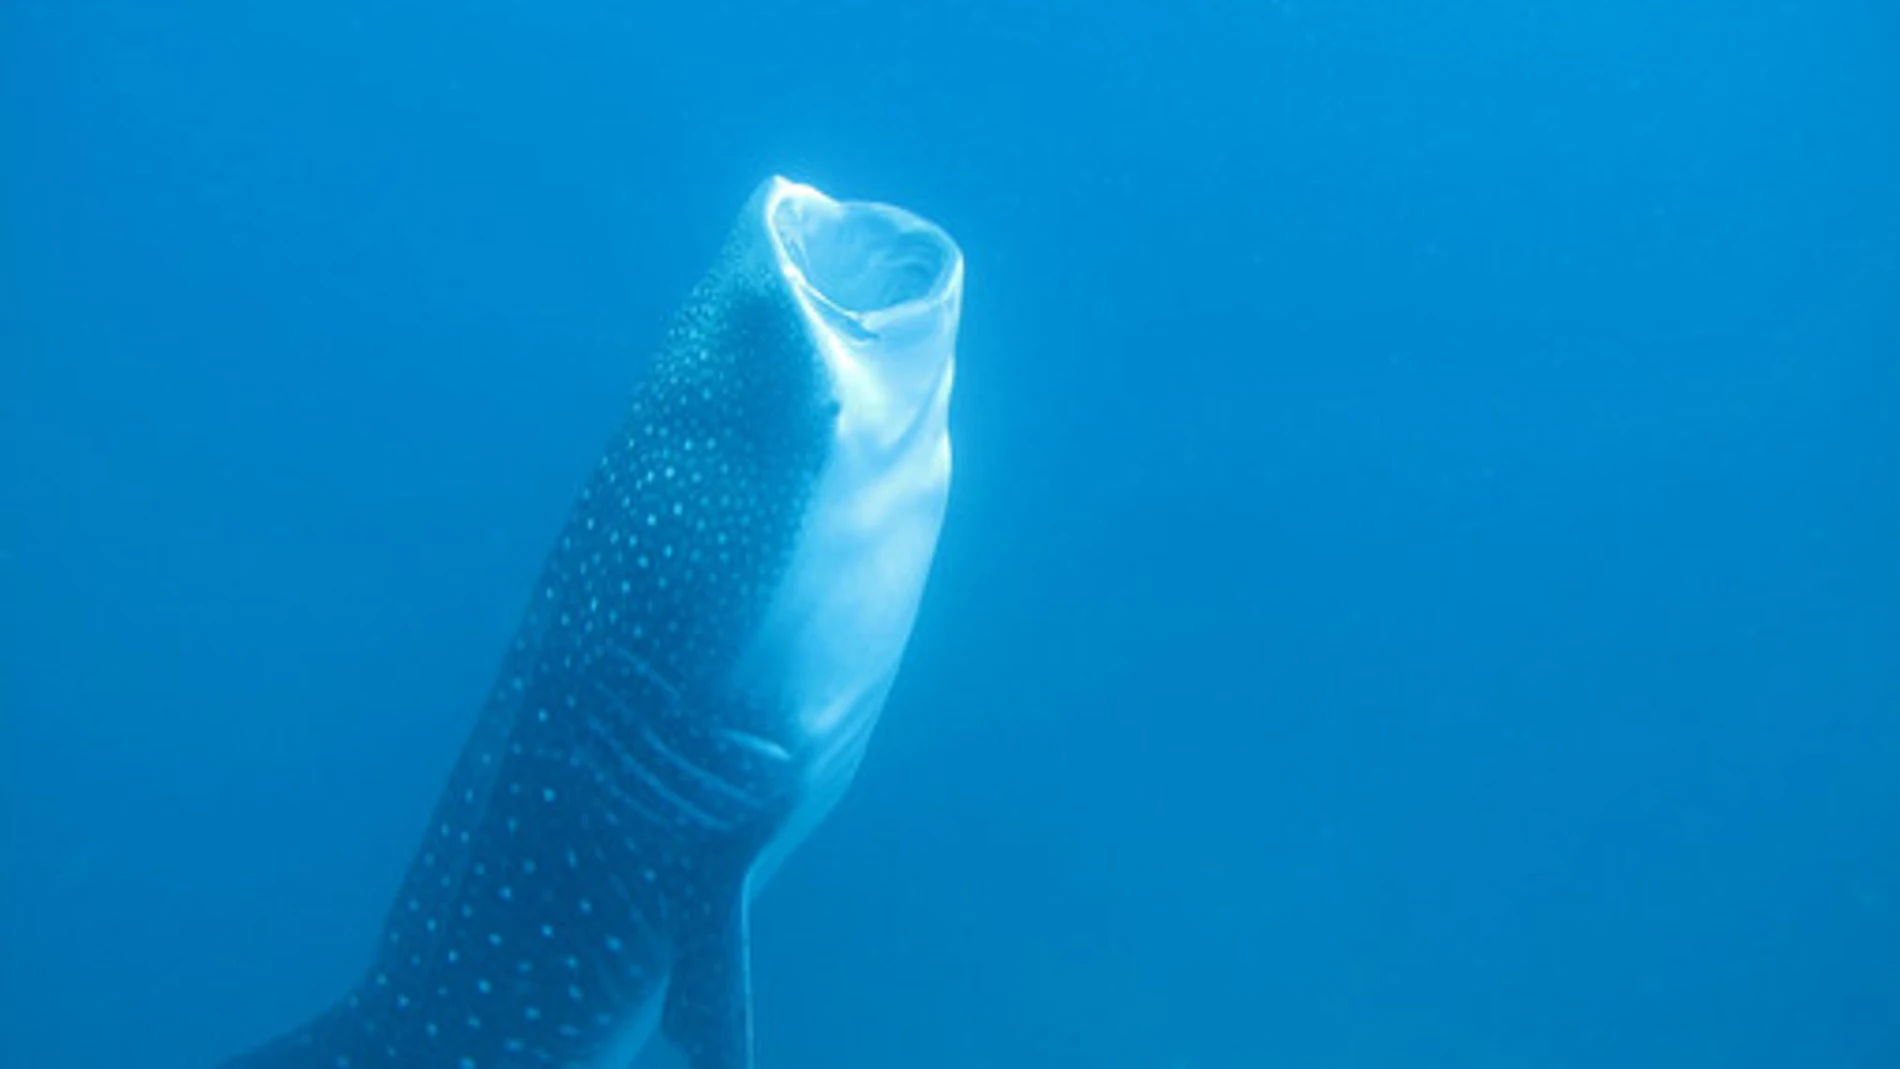 Los tiburones ballena comen plancton, huevos de peces, krill, larvas de cangrejo, así como pequeños peces y calamares. Accidentalmente pueden tragar plásticos que no pueden digerir. / Kevan Mantell